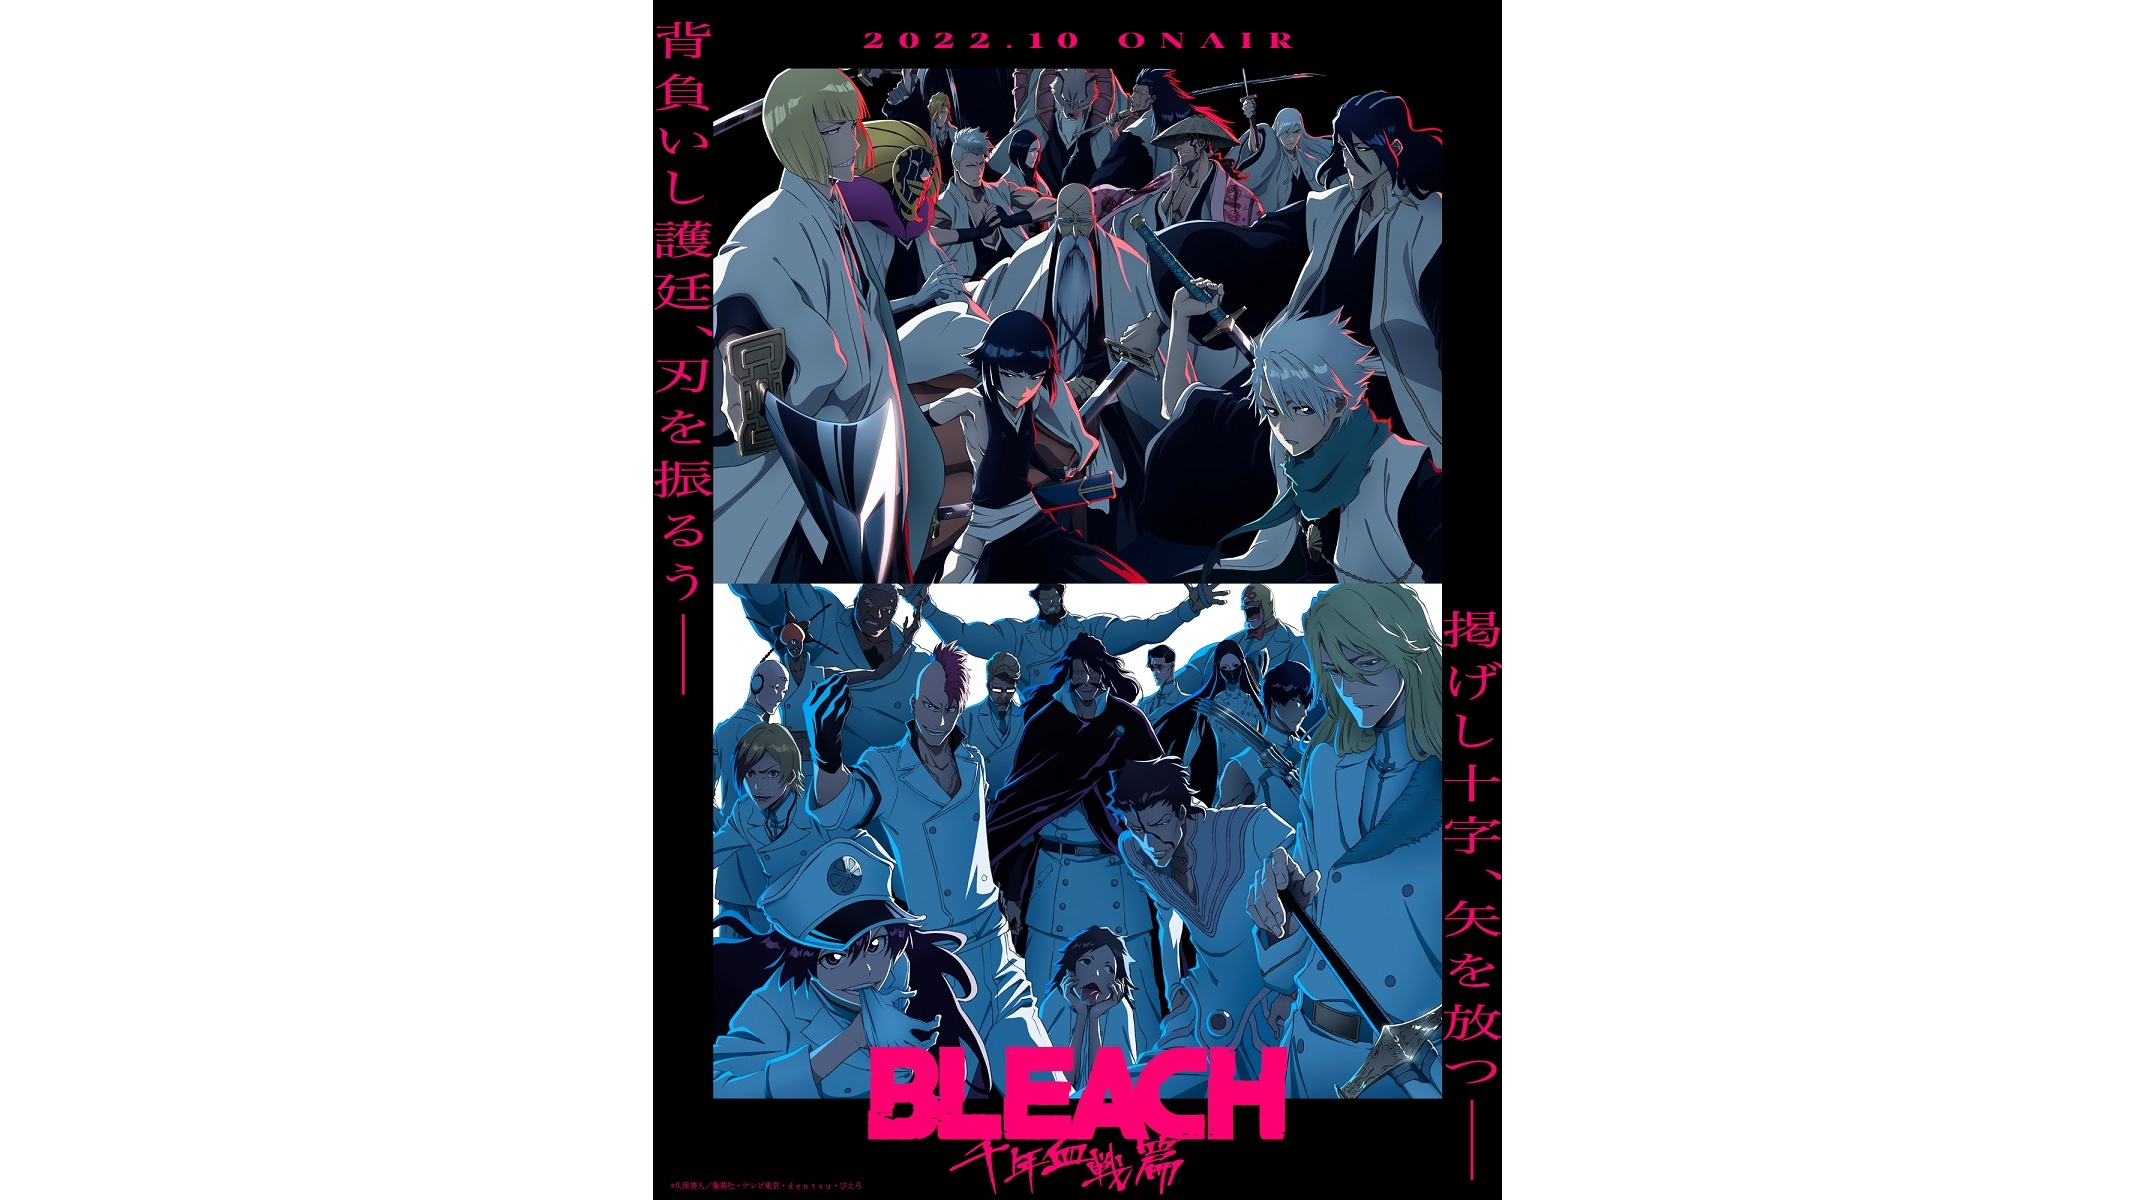 Bleach Thousand Year Blood War Part 2 Release Date Window Set